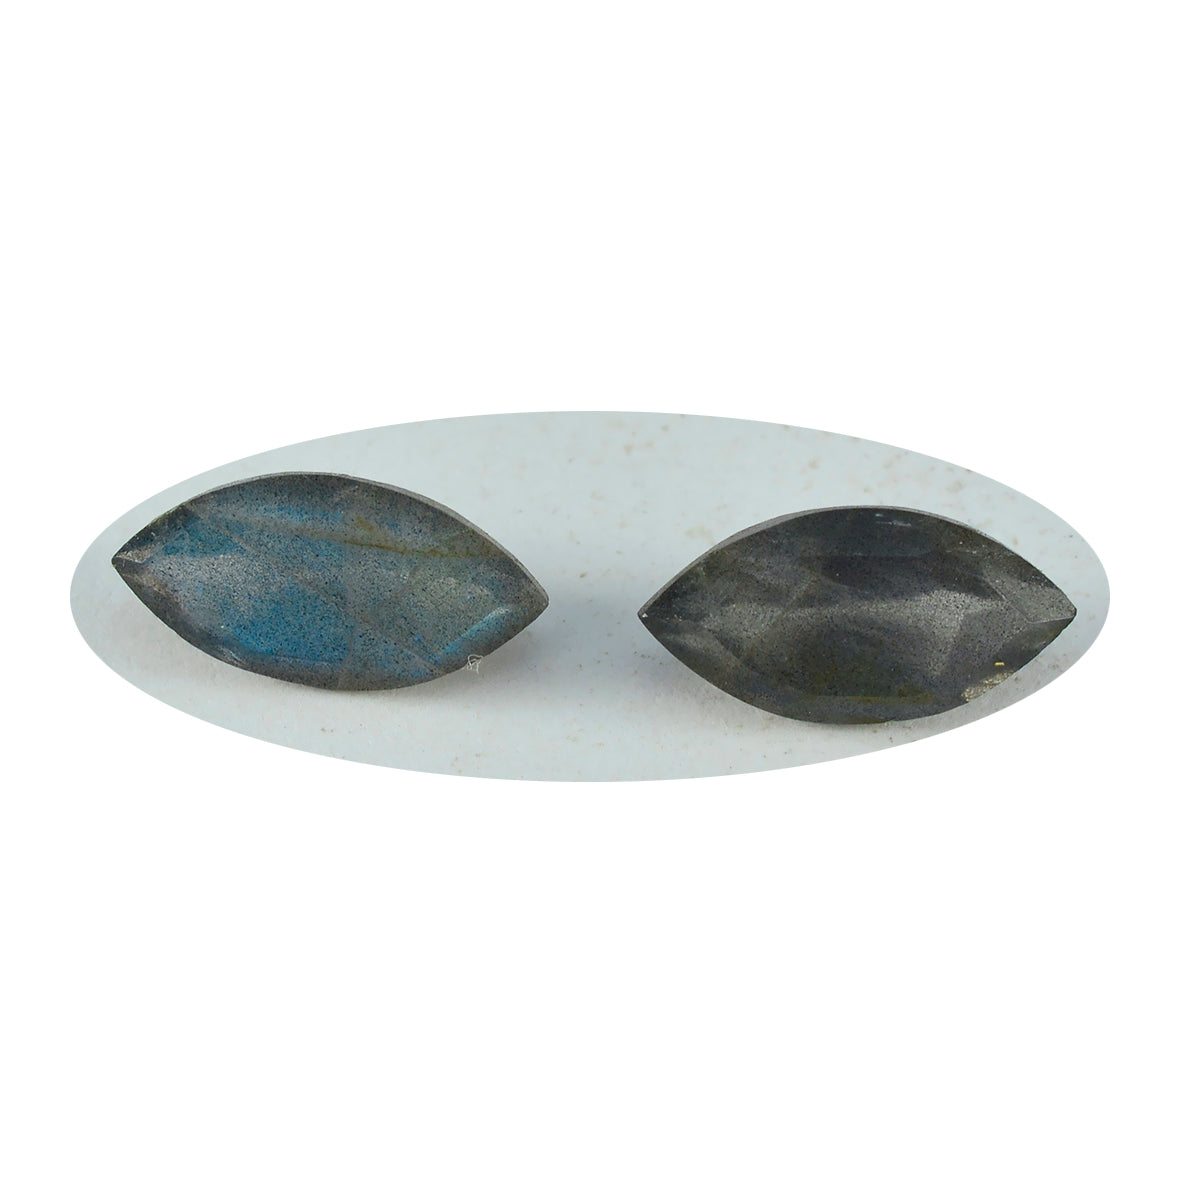 riyogems 1 шт. натуральный серый лабрадор ограненный 8x16 мм форма маркиза милый качественный свободный камень